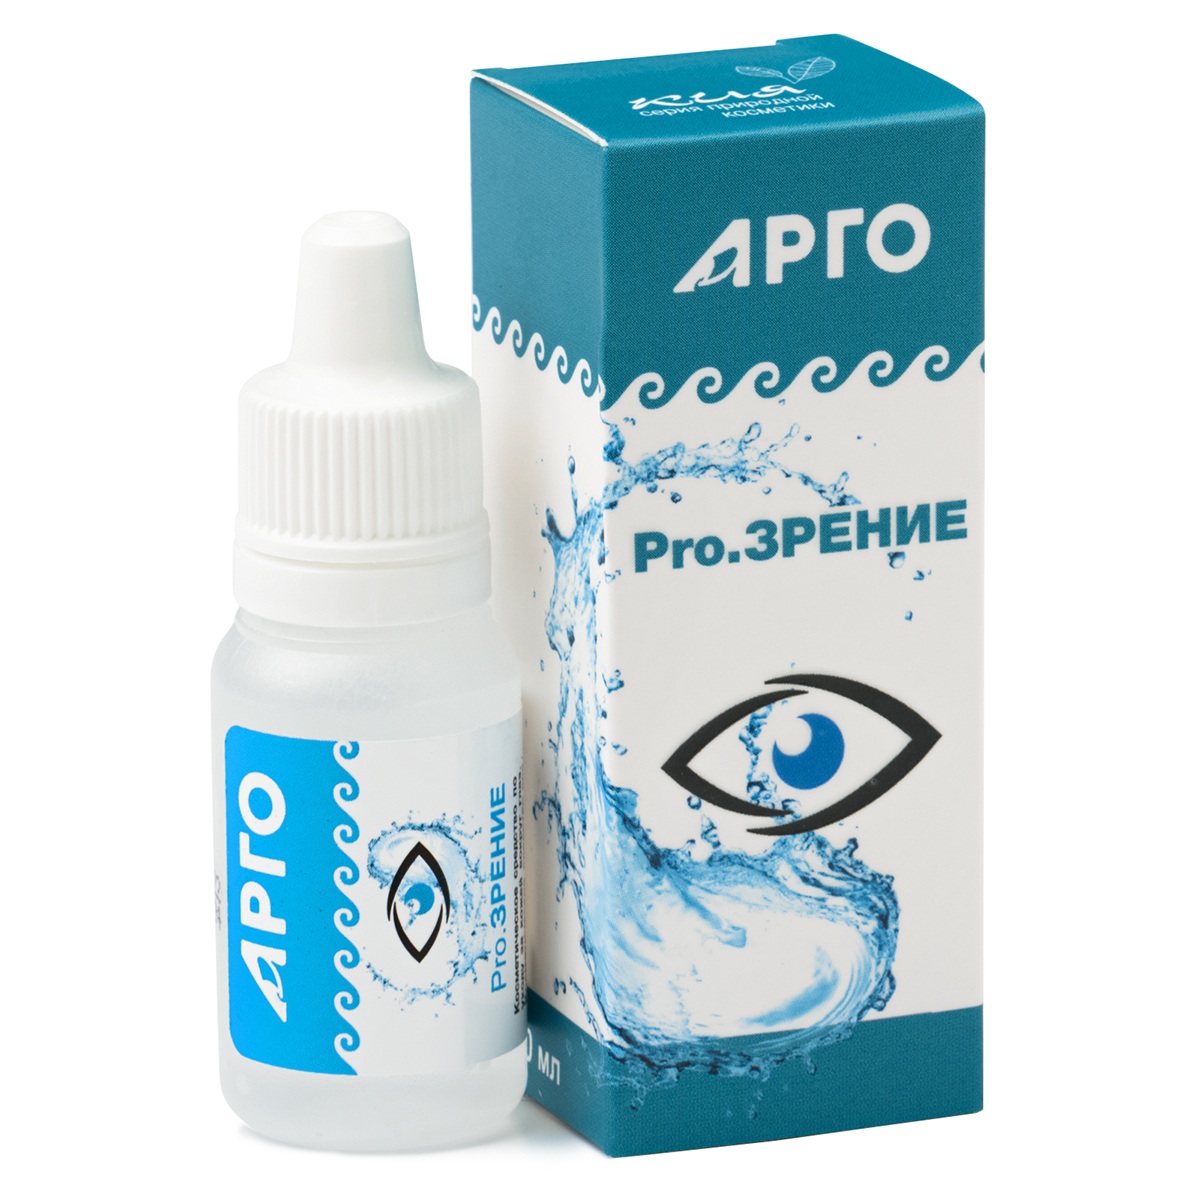 Pro.Зрение, средство косметическое для глаз, 10 мл от Новь